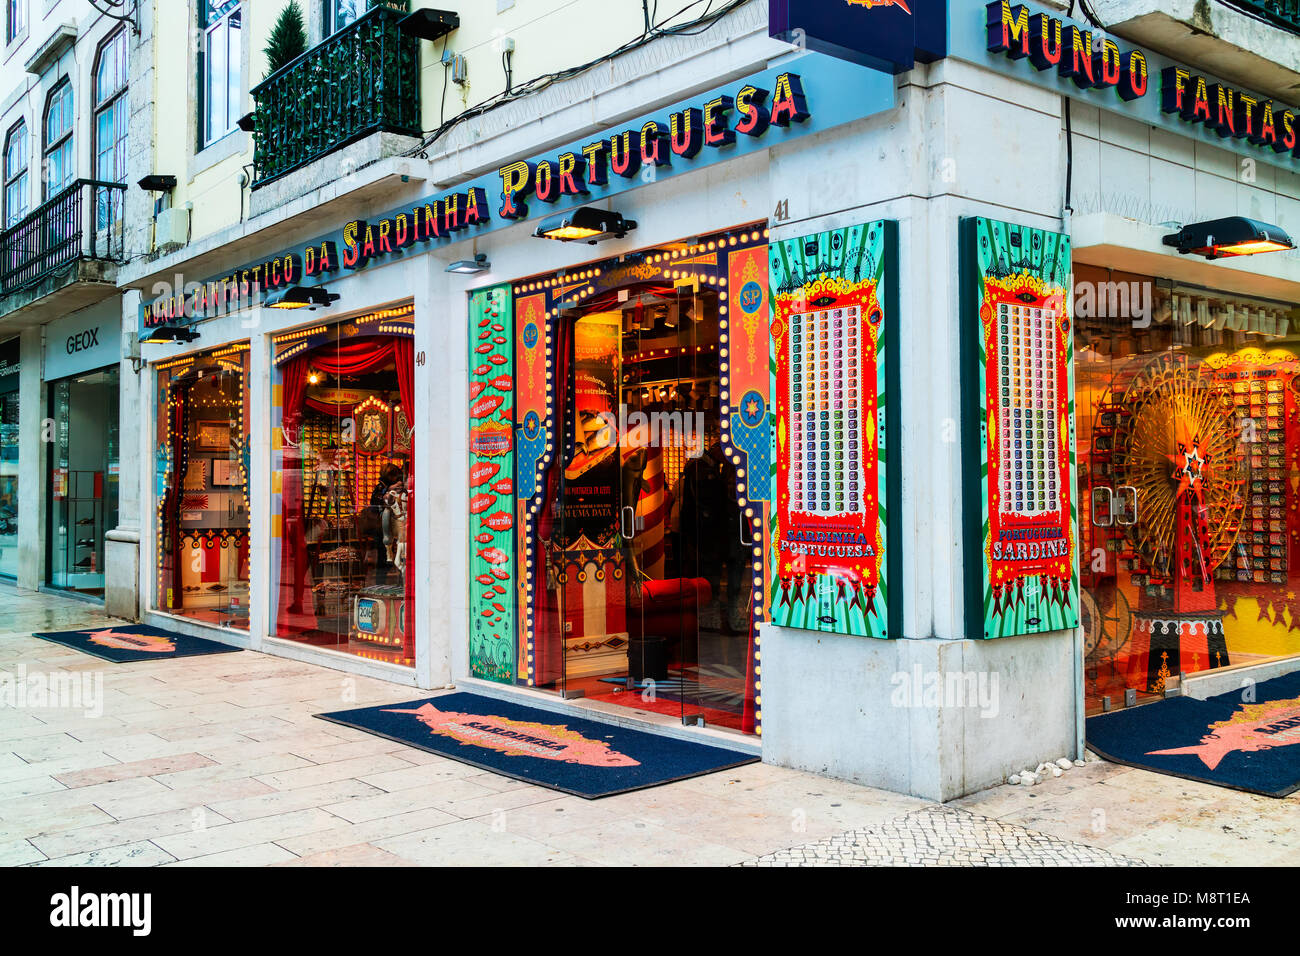 Le monde fantastique de sardines sardines portugaises - boutique spécialisée à Lisbonne, Portugal a ouvert une usine de conserves en Murtosa. Banque D'Images